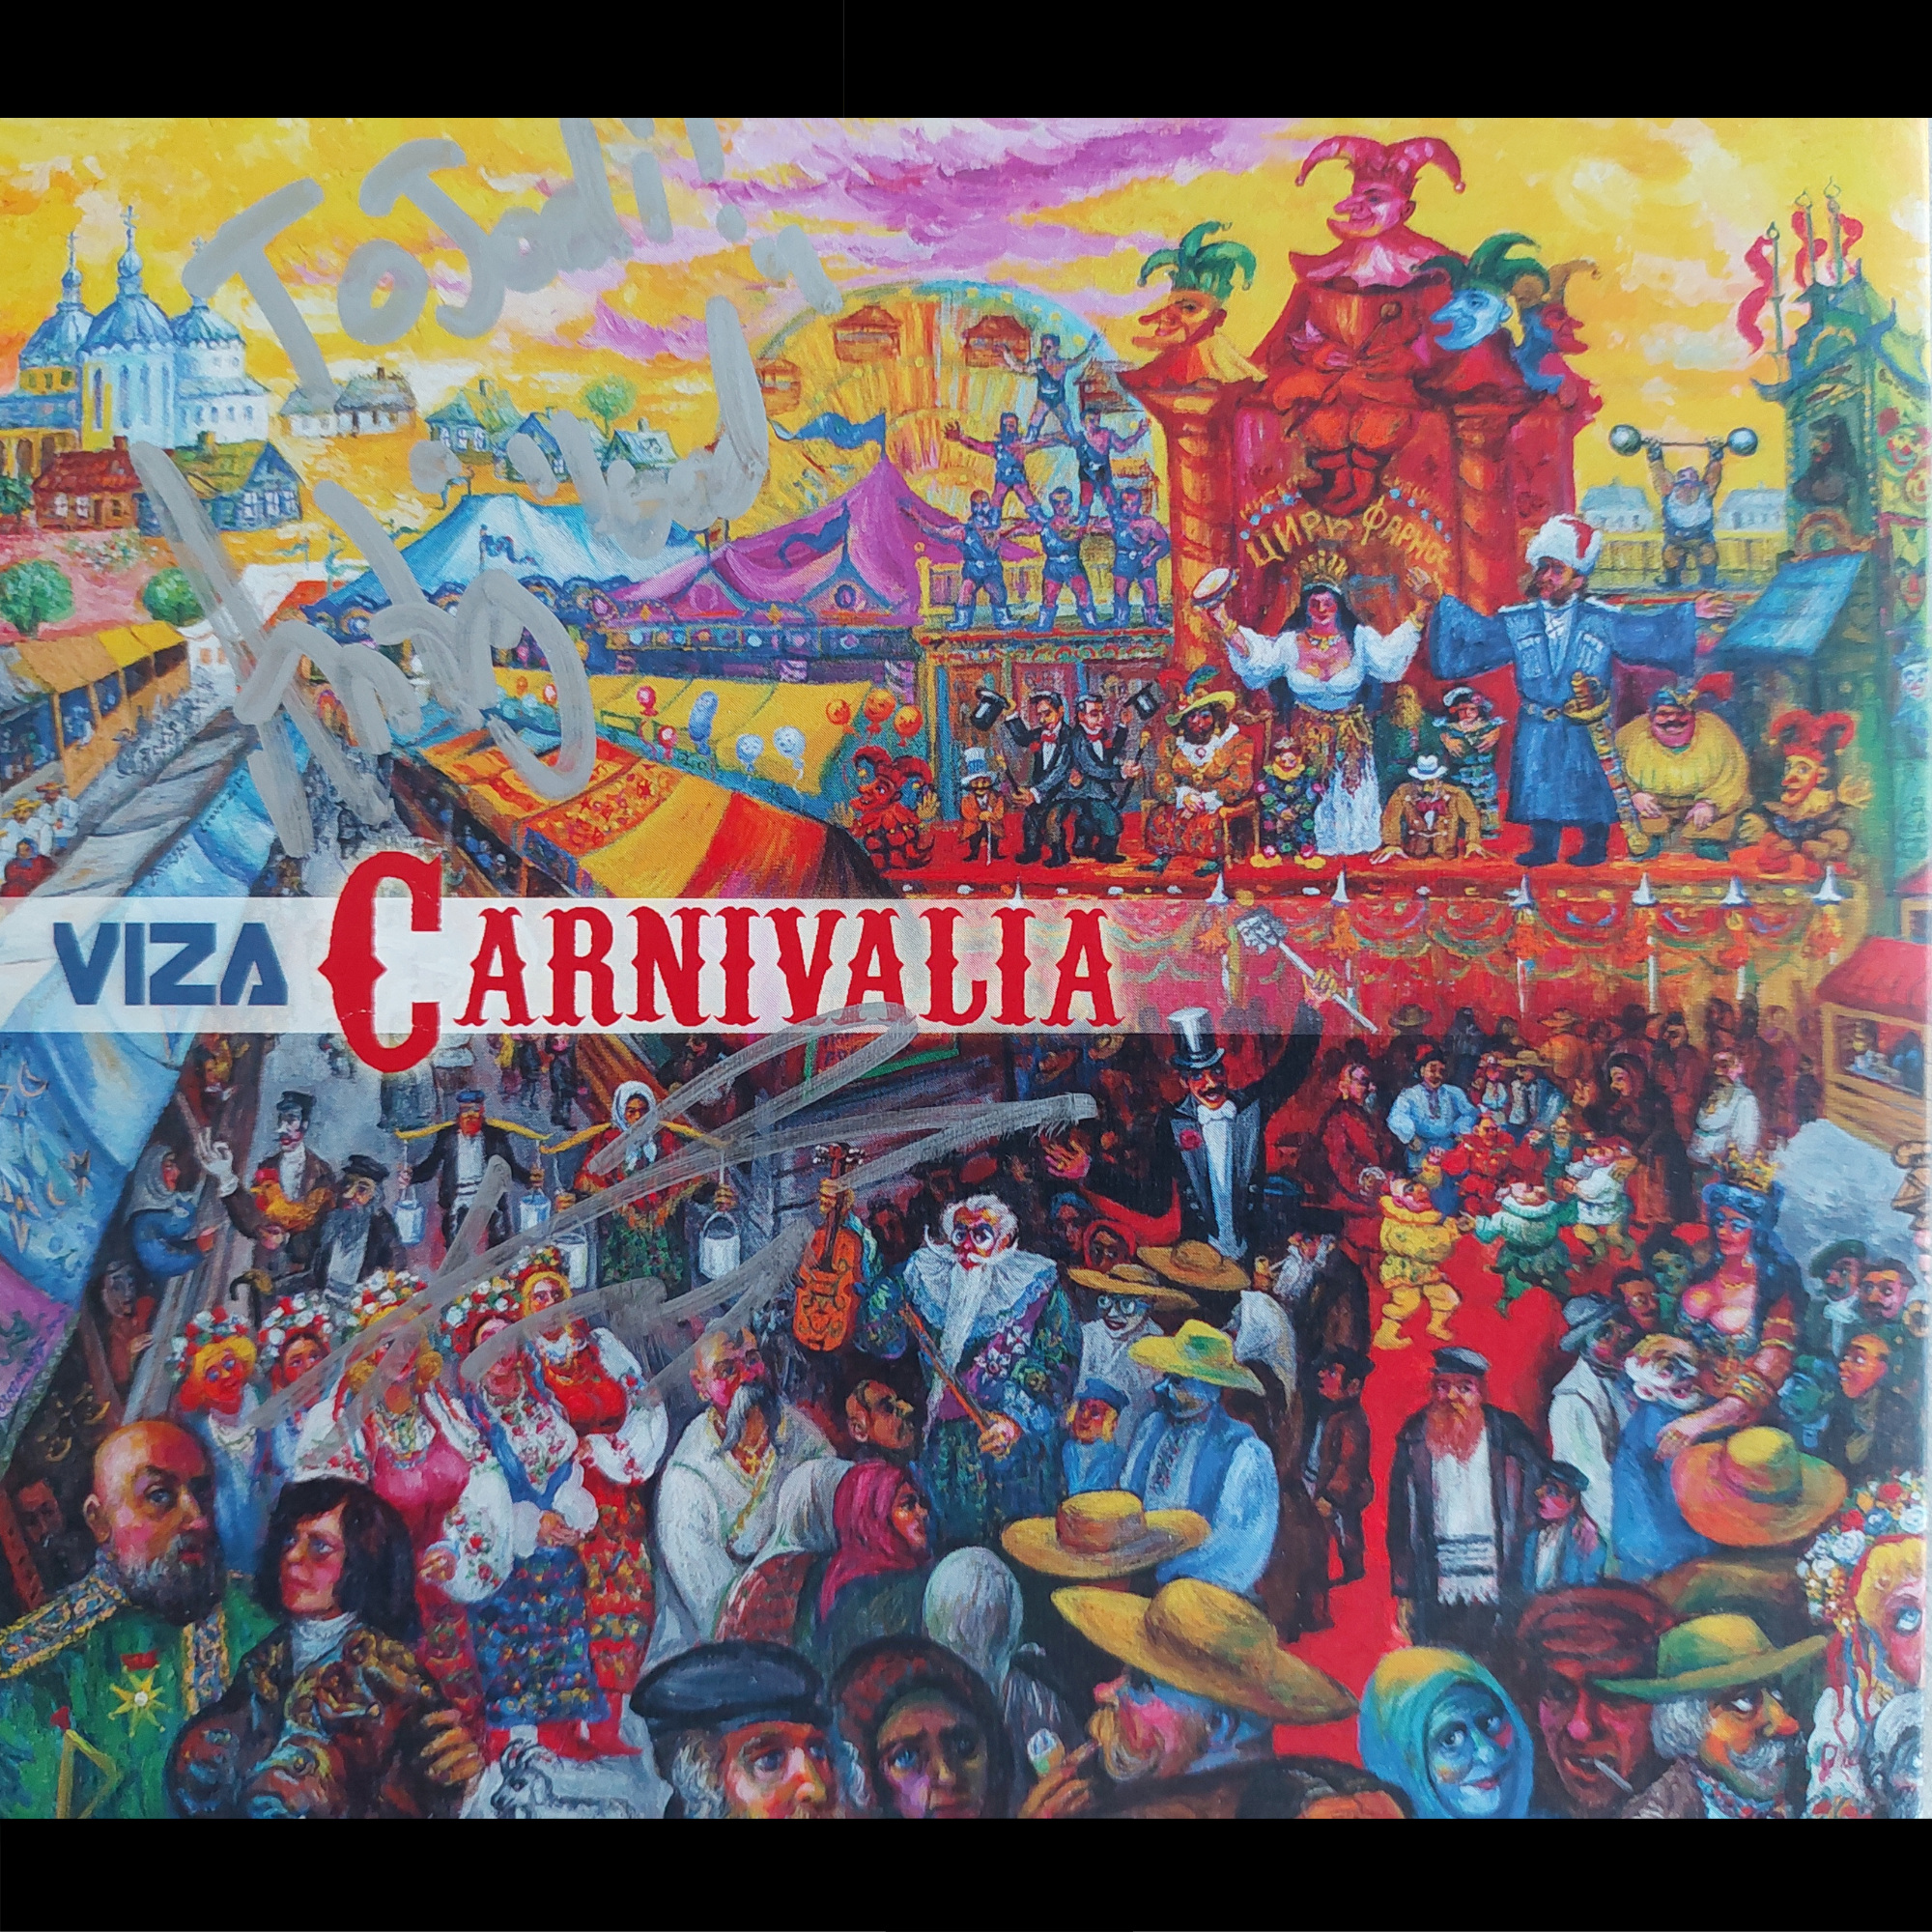 Viza Carnavalia